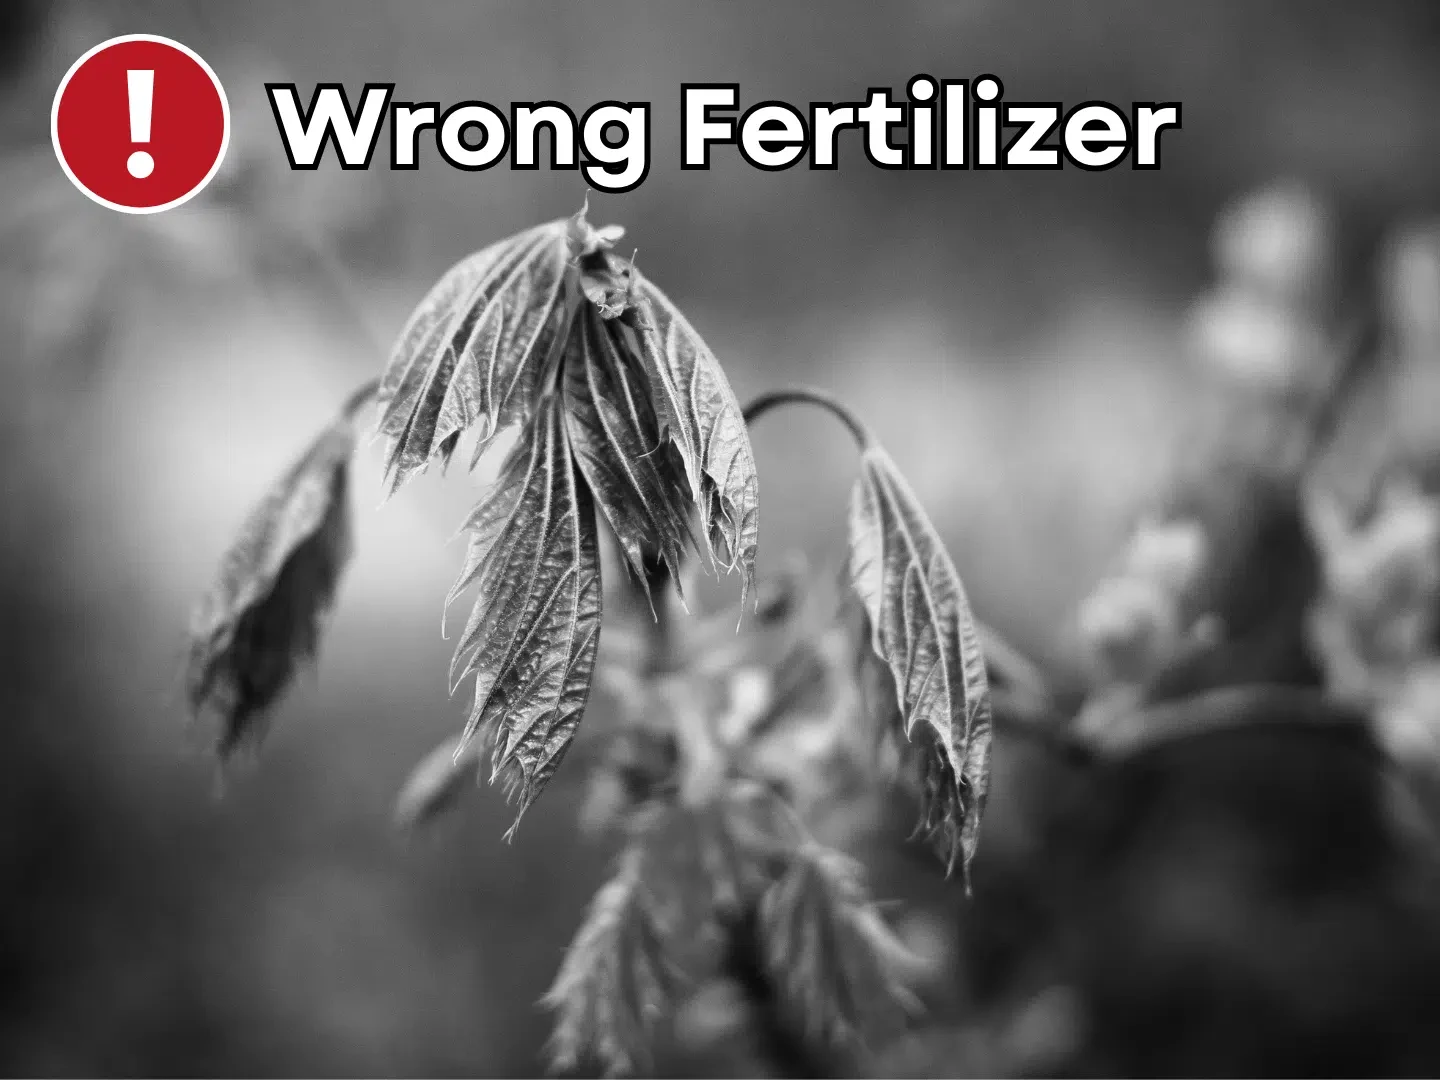 NGI Wrong Fertilizer